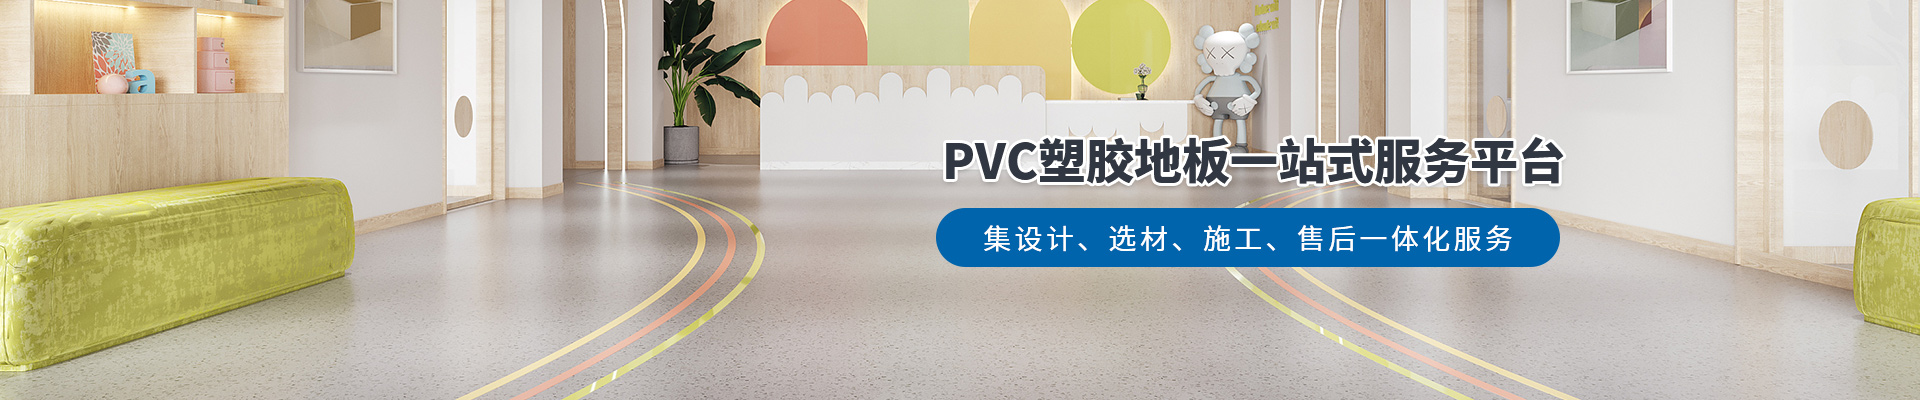 鳳城橡塑，PVC塑膠地板一站式服務平臺